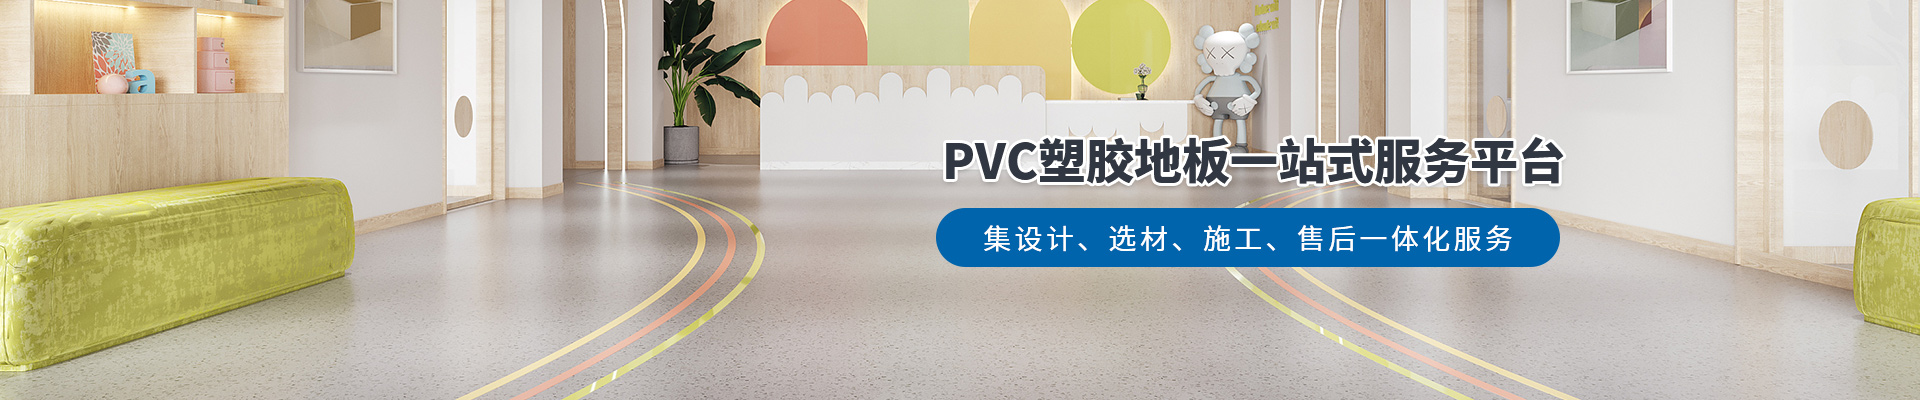 鳳城橡塑，PVC塑膠地板一站式服務平臺